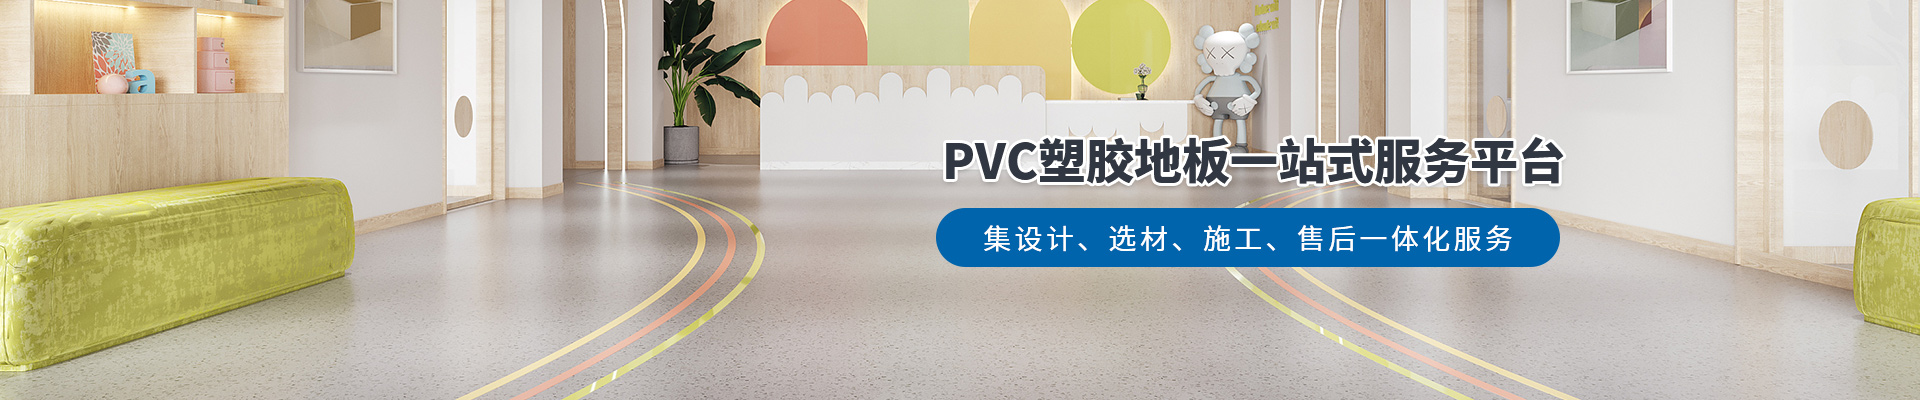 鳳城橡塑，PVC塑膠地板一站式服務平臺